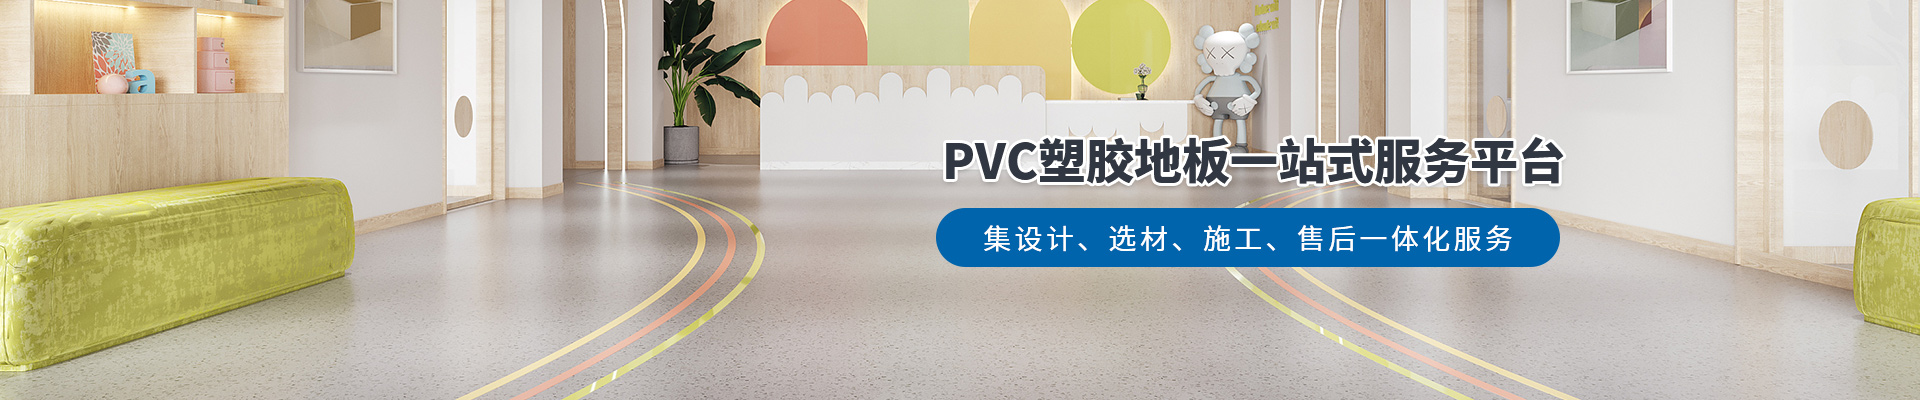 鳳城橡塑，PVC塑膠地板一站式服務平臺